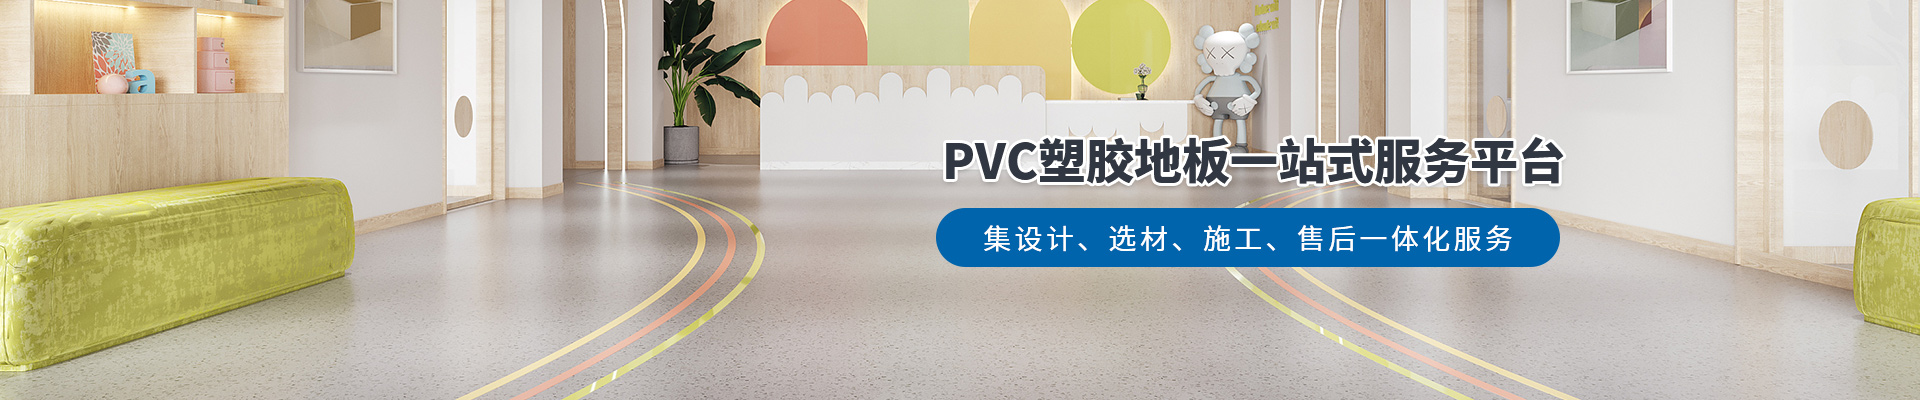 鳳城橡塑，PVC塑膠地板一站式服務平臺